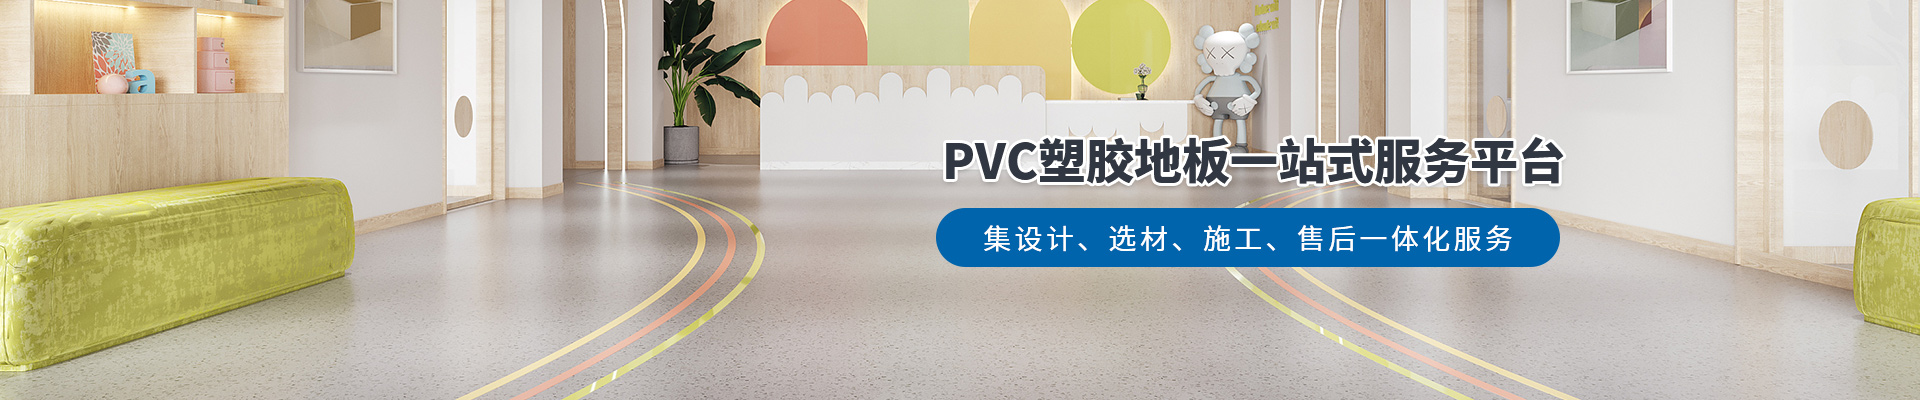 鳳城橡塑，PVC塑膠地板一站式服務平臺